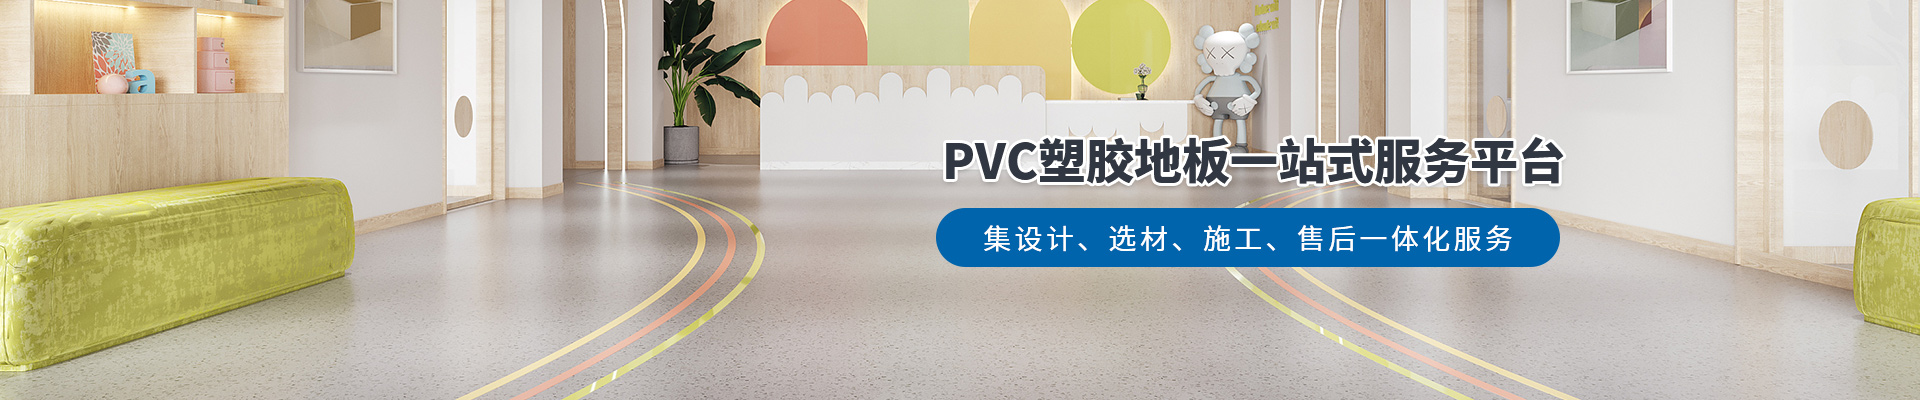 鳳城橡塑，PVC塑膠地板一站式服務平臺